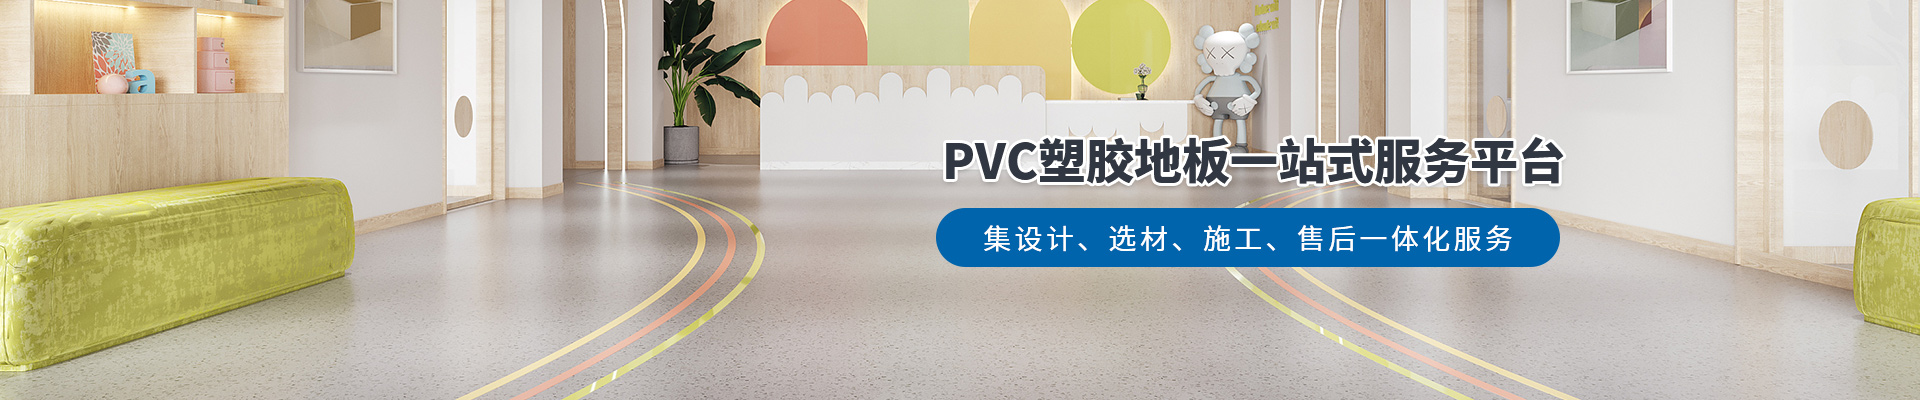 鳳城橡塑，PVC塑膠地板一站式服務平臺